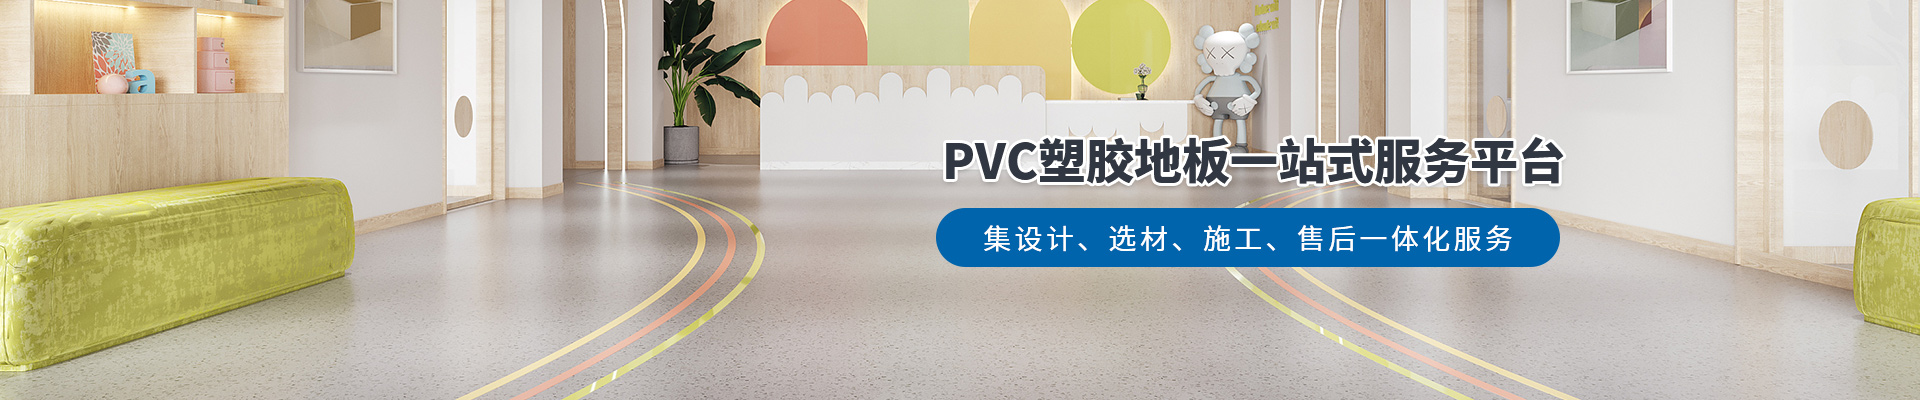 鳳城橡塑，PVC塑膠地板一站式服務平臺